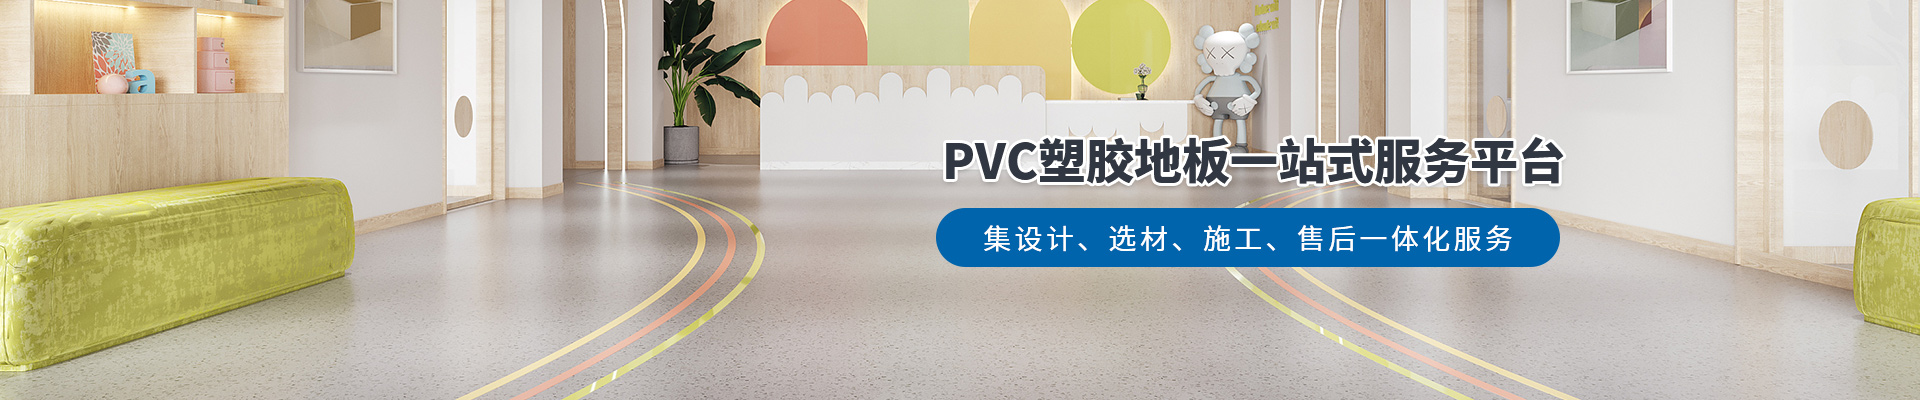 鳳城橡塑，PVC塑膠地板一站式服務平臺